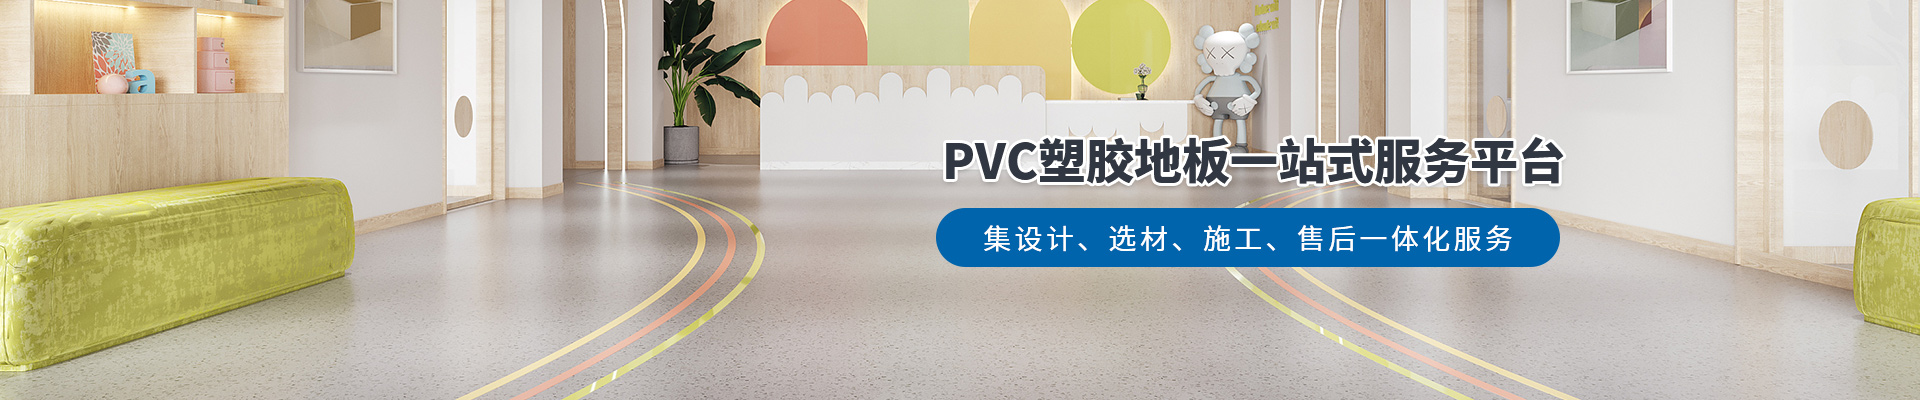 鳳城橡塑，PVC塑膠地板一站式服務平臺